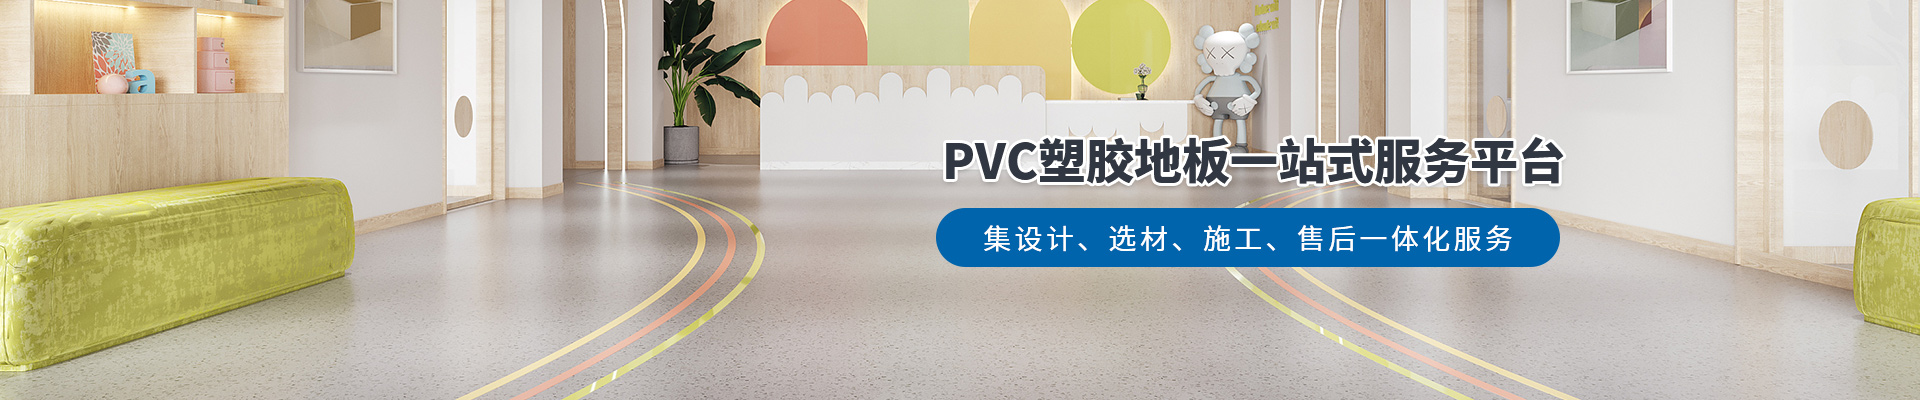 鳳城橡塑，PVC塑膠地板一站式服務平臺